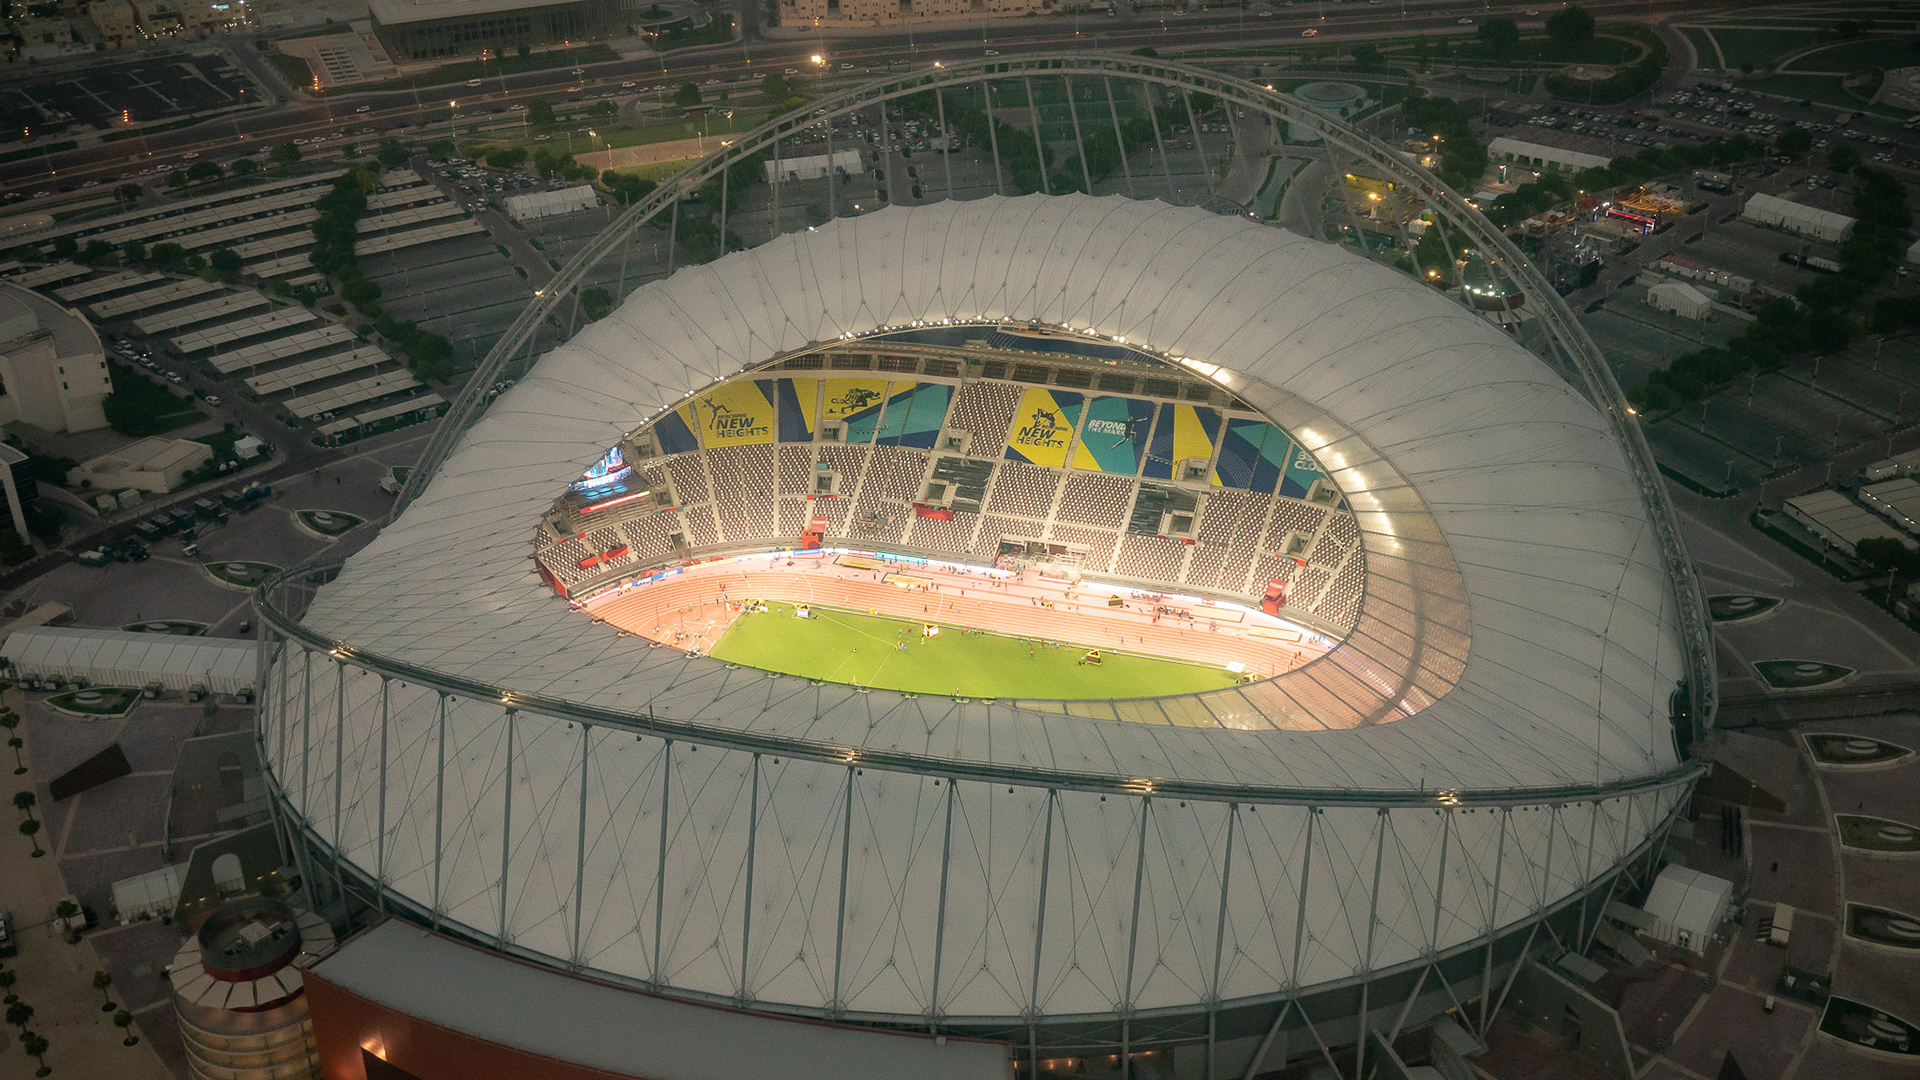 Blick auf das Stadion in Katar | dpa